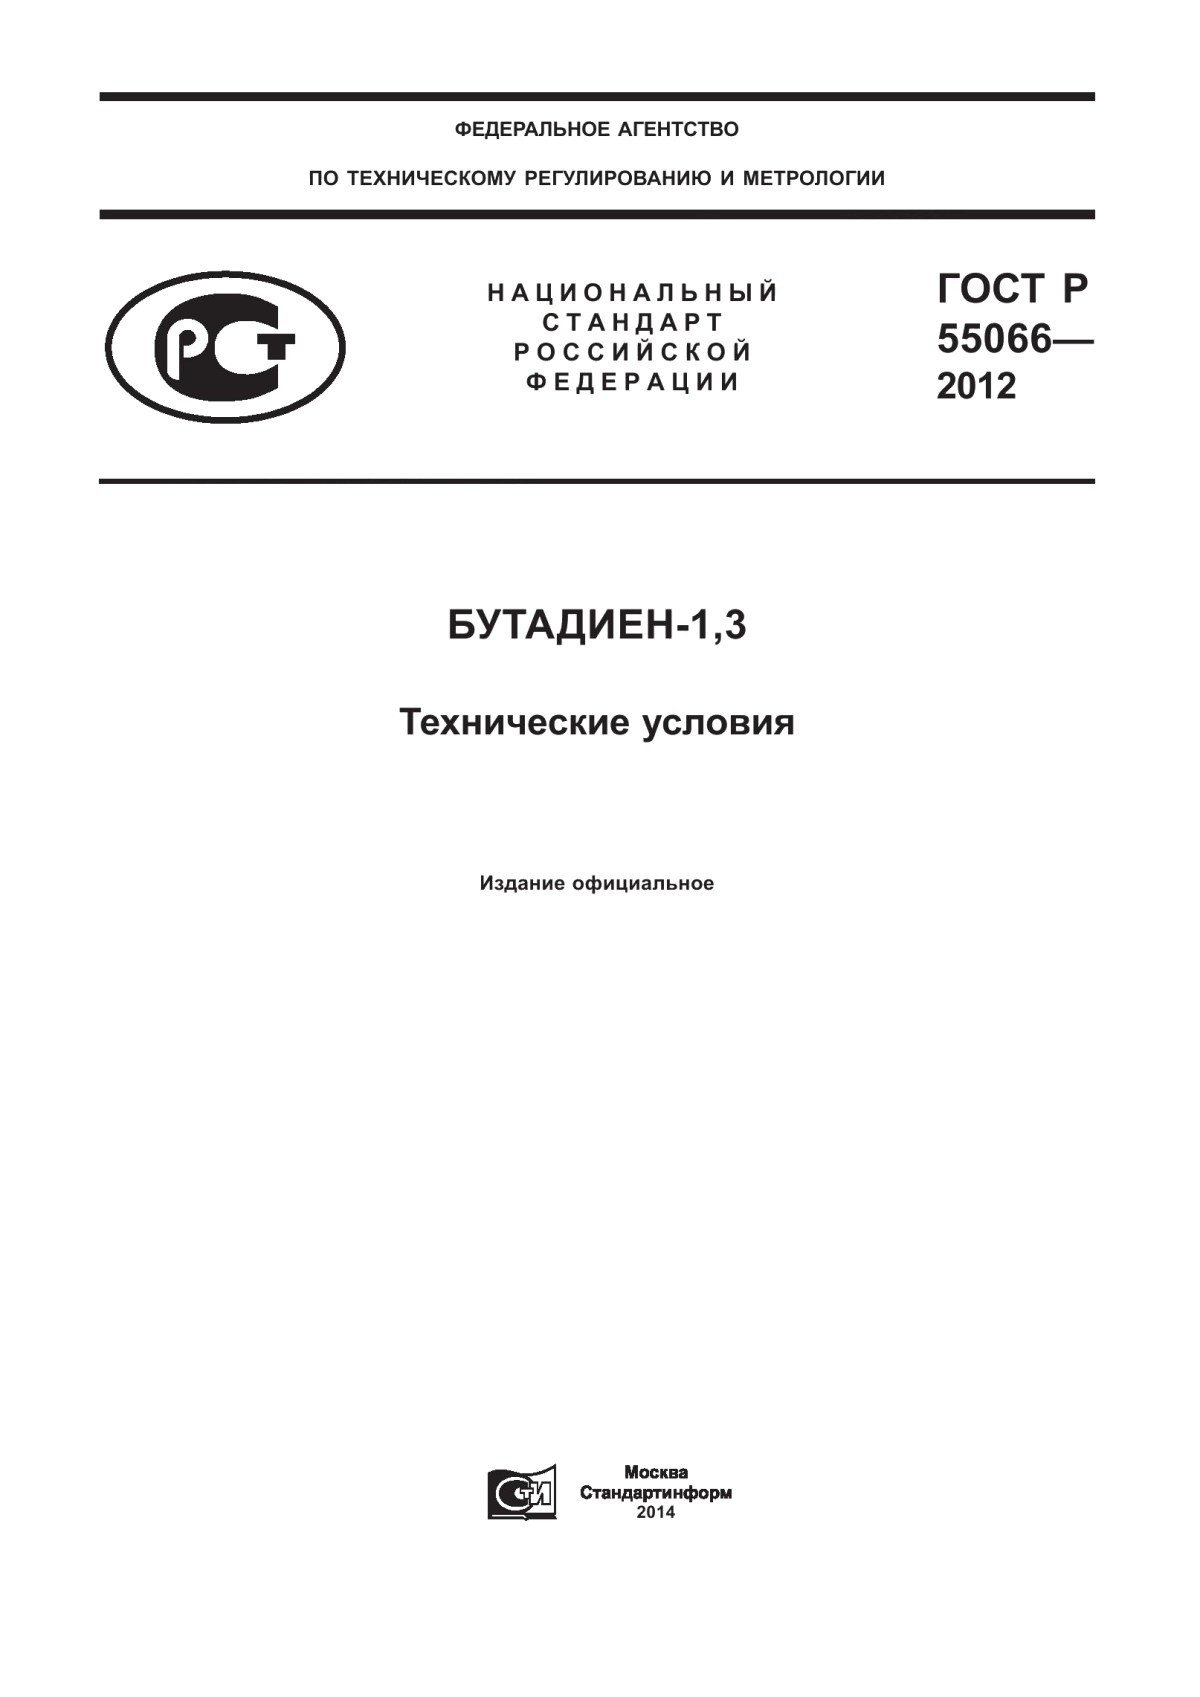 ГОСТ Р 55066-2012 Бутадиен-1,3. Технические условия